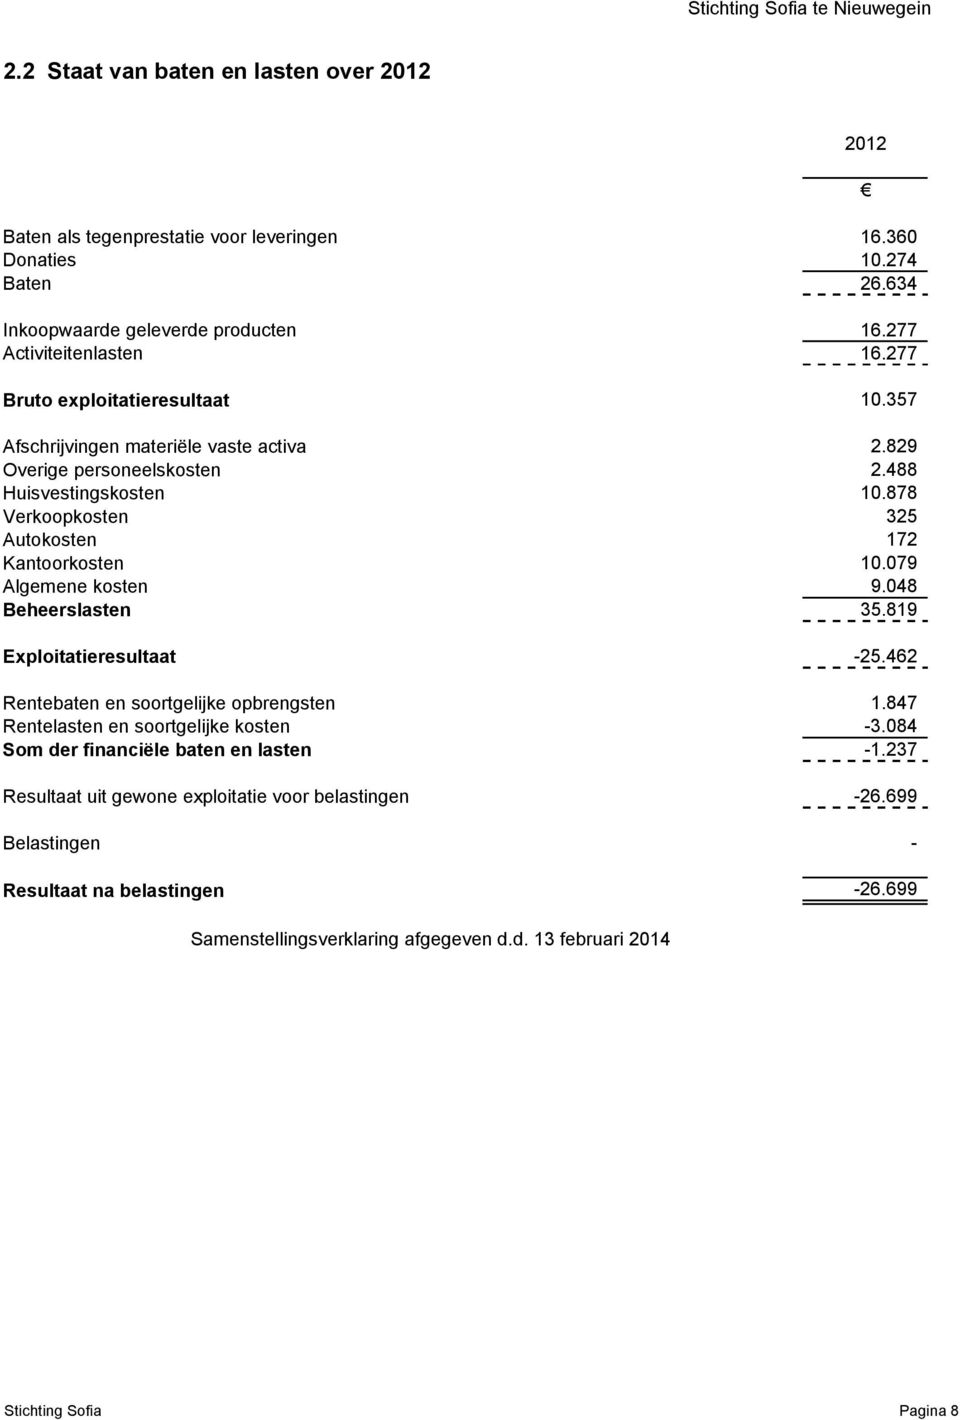 079 Algemene kosten 9.048 Beheerslasten 35.819 2012 Exploitatieresultaat -25.462 Rentebaten en soortgelijke opbrengsten 1.847 Rentelasten en soortgelijke kosten -3.